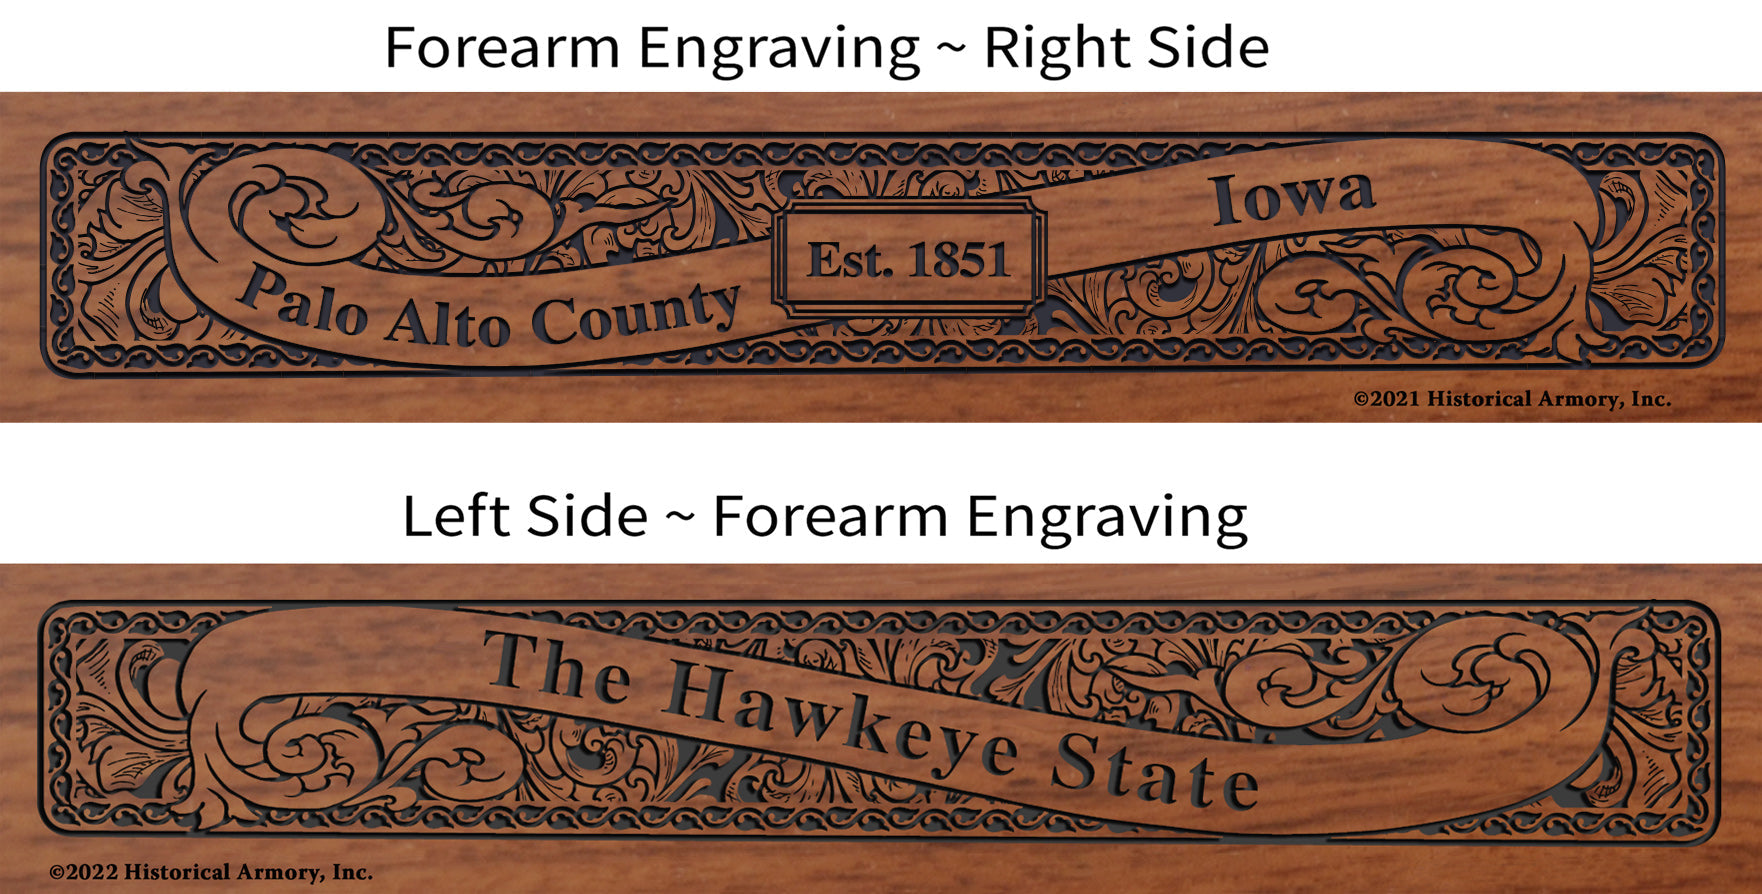 Palo Alto County Iowa Engraved Rifle Forearm